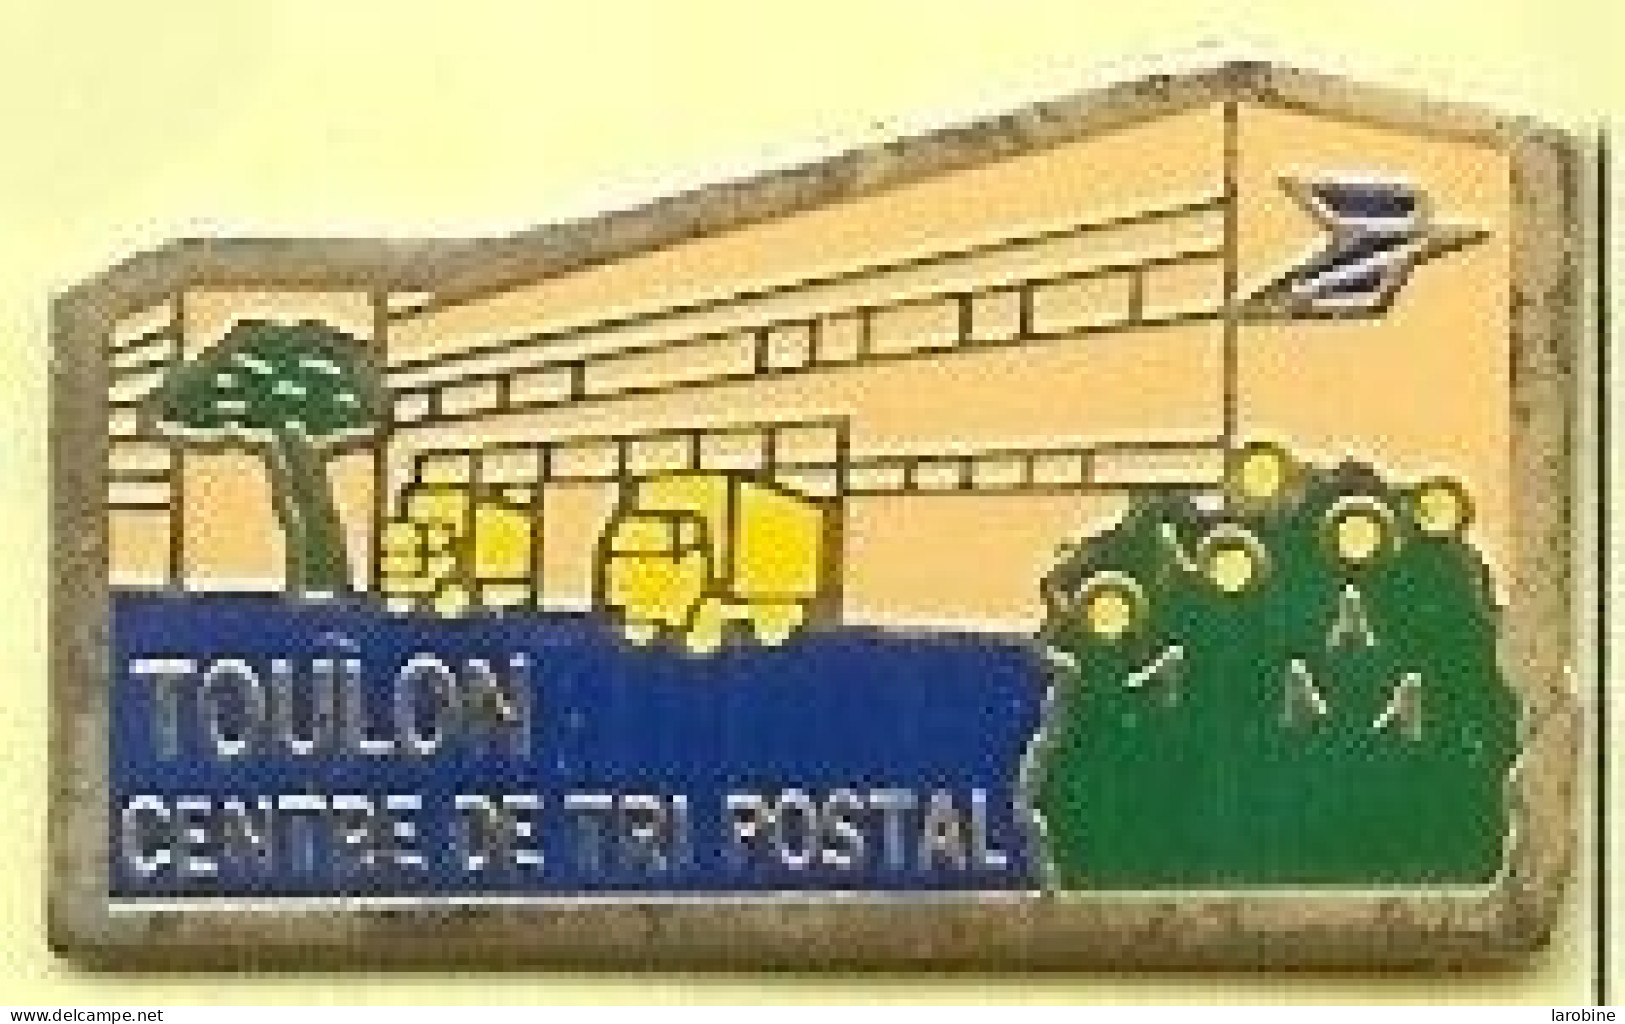 @@ La Poste Centre De Tri Postal De TOULON Var PACA @@po110 - Poste